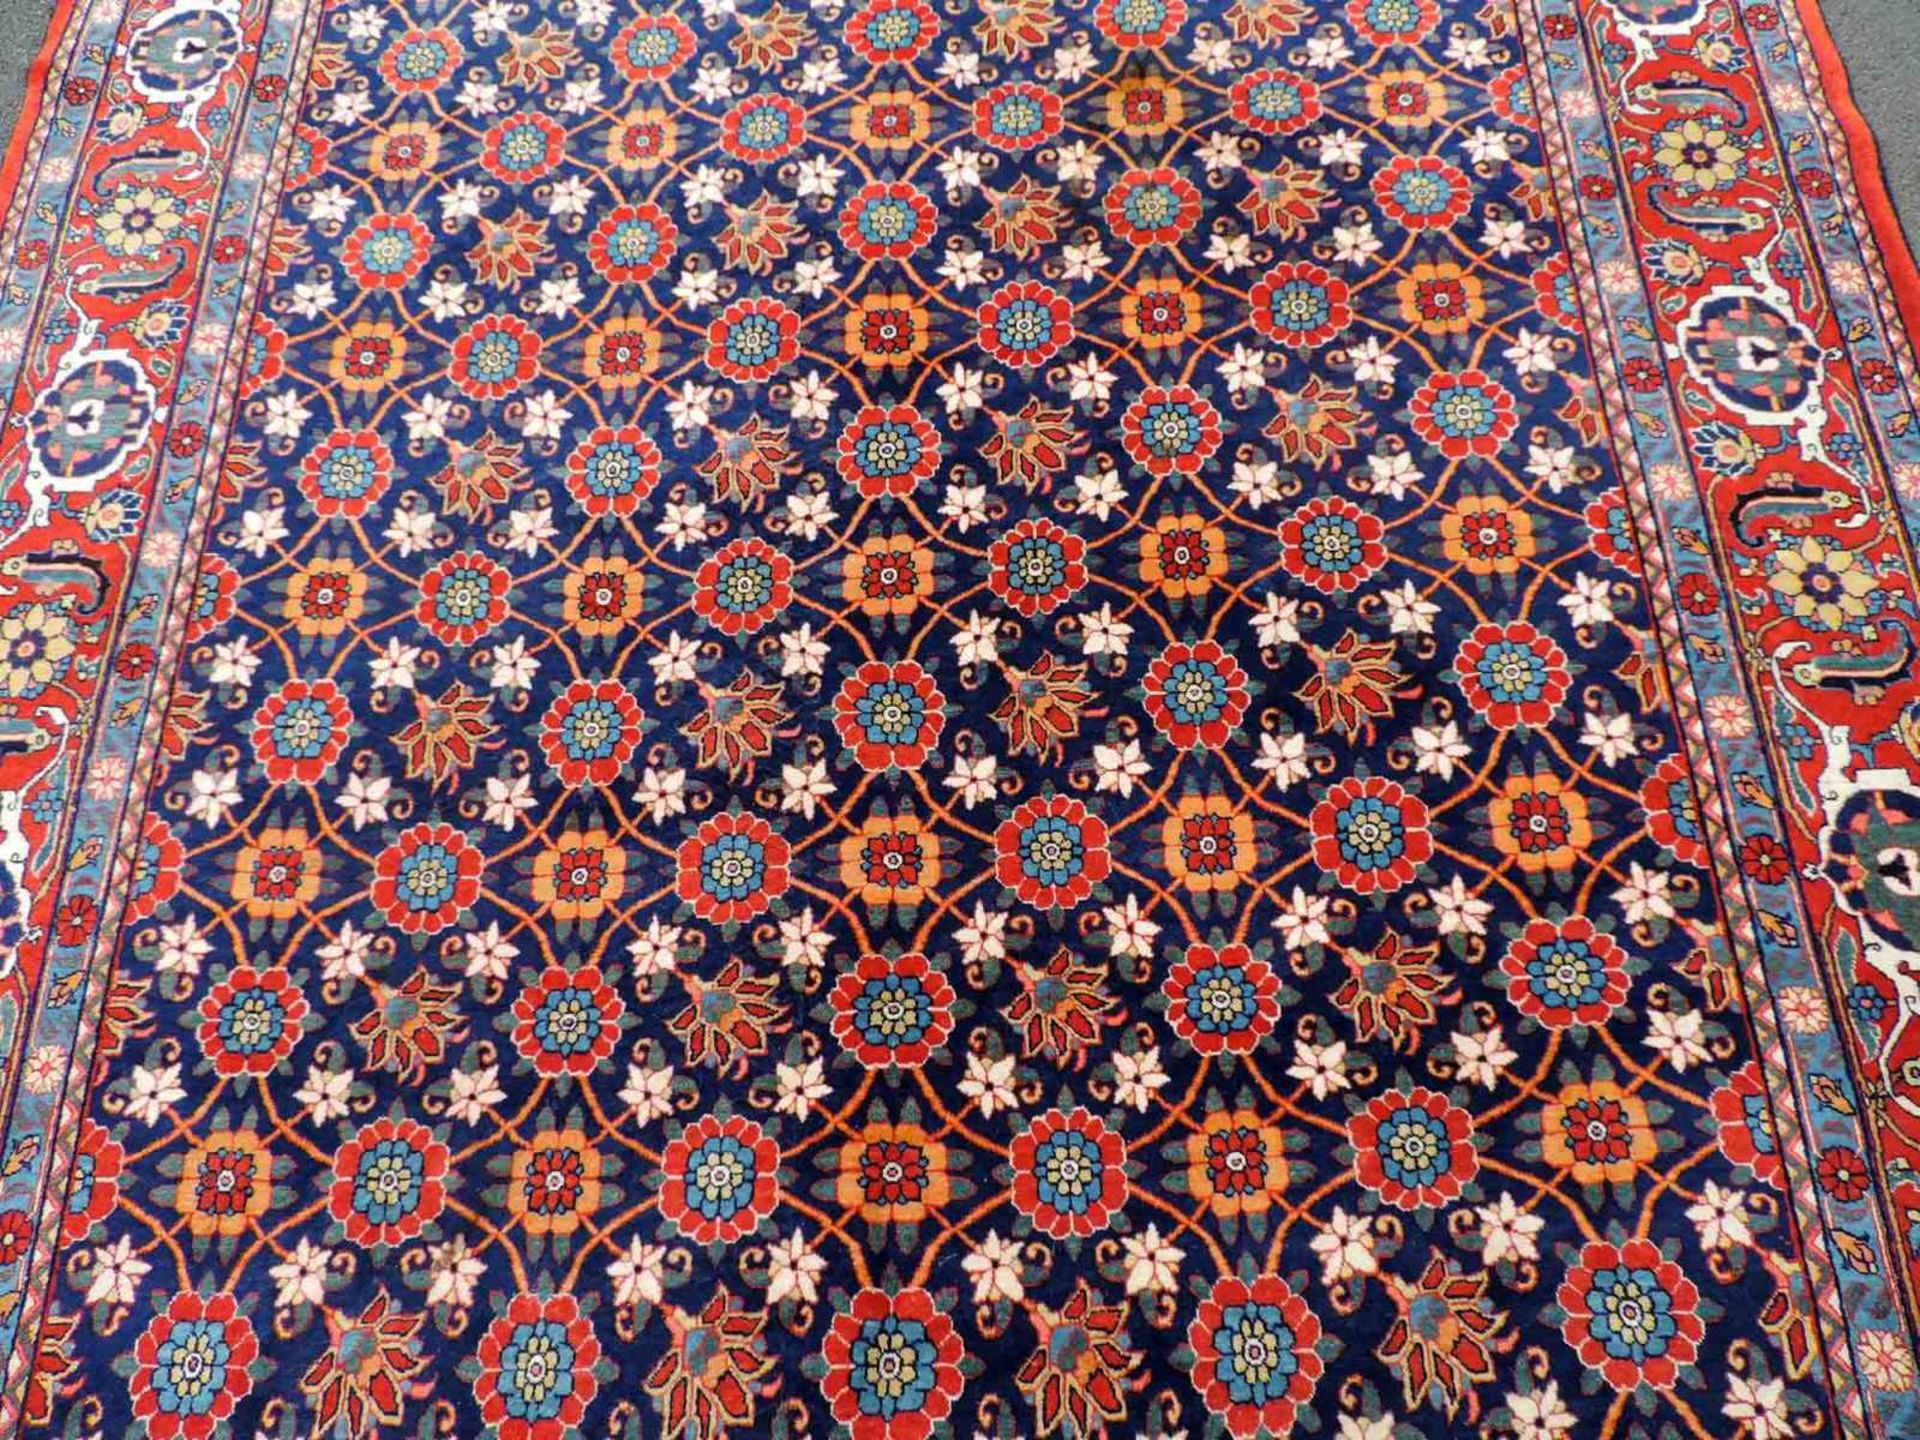 Weramin Manfakturteppich. Iran, alt, um 1940. 308 cm x 210 cm. Handgeknüpft. Wolle auf Baumwolle. - Bild 4 aus 7